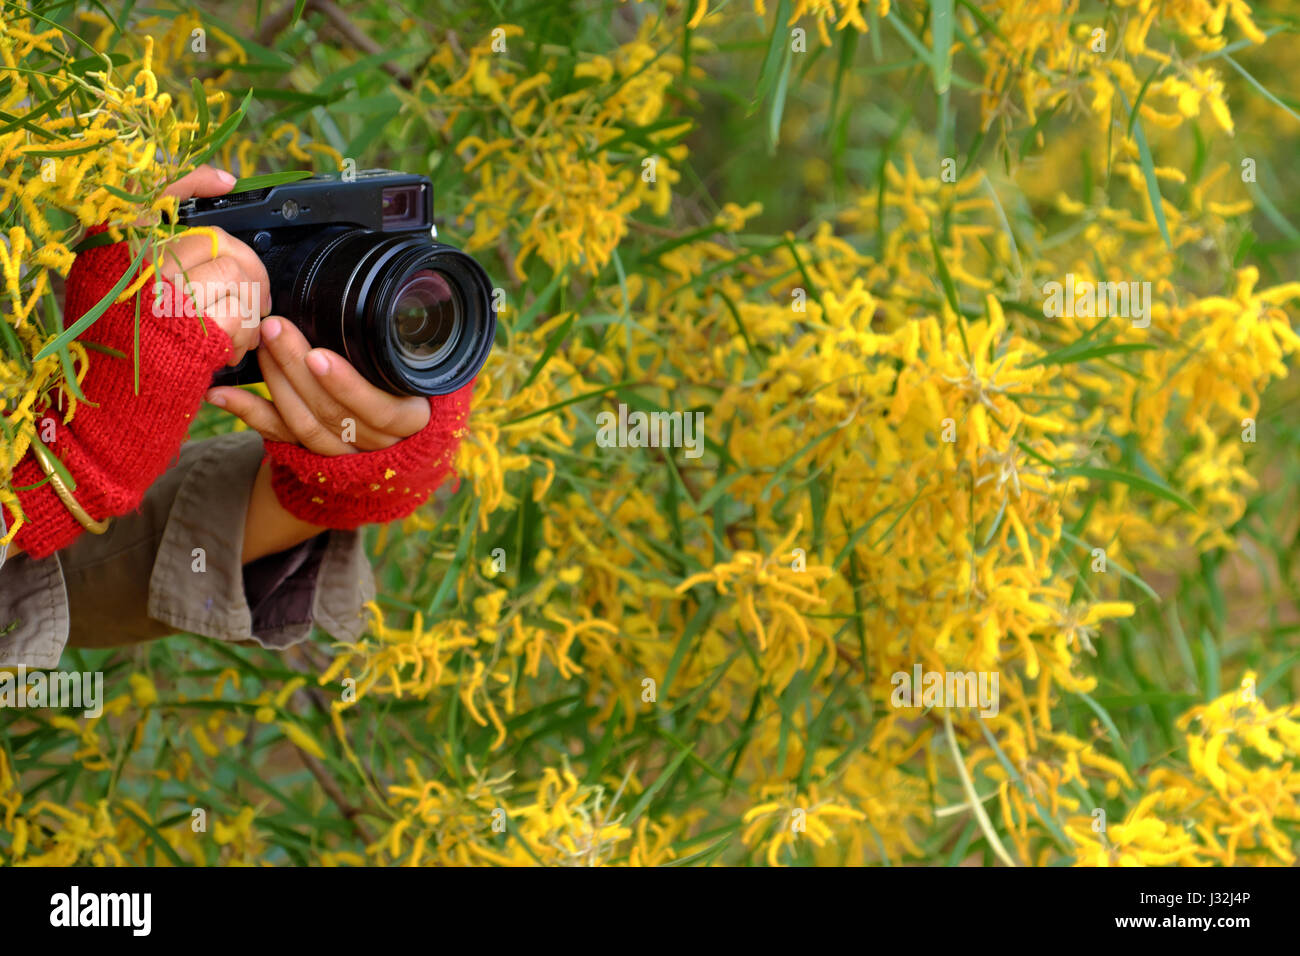 Frau Hand mit Kamera fotografieren auf gelbe Blume Hintergrund, Fotografin mit Leidenschaft in der Fotografie Stockfoto